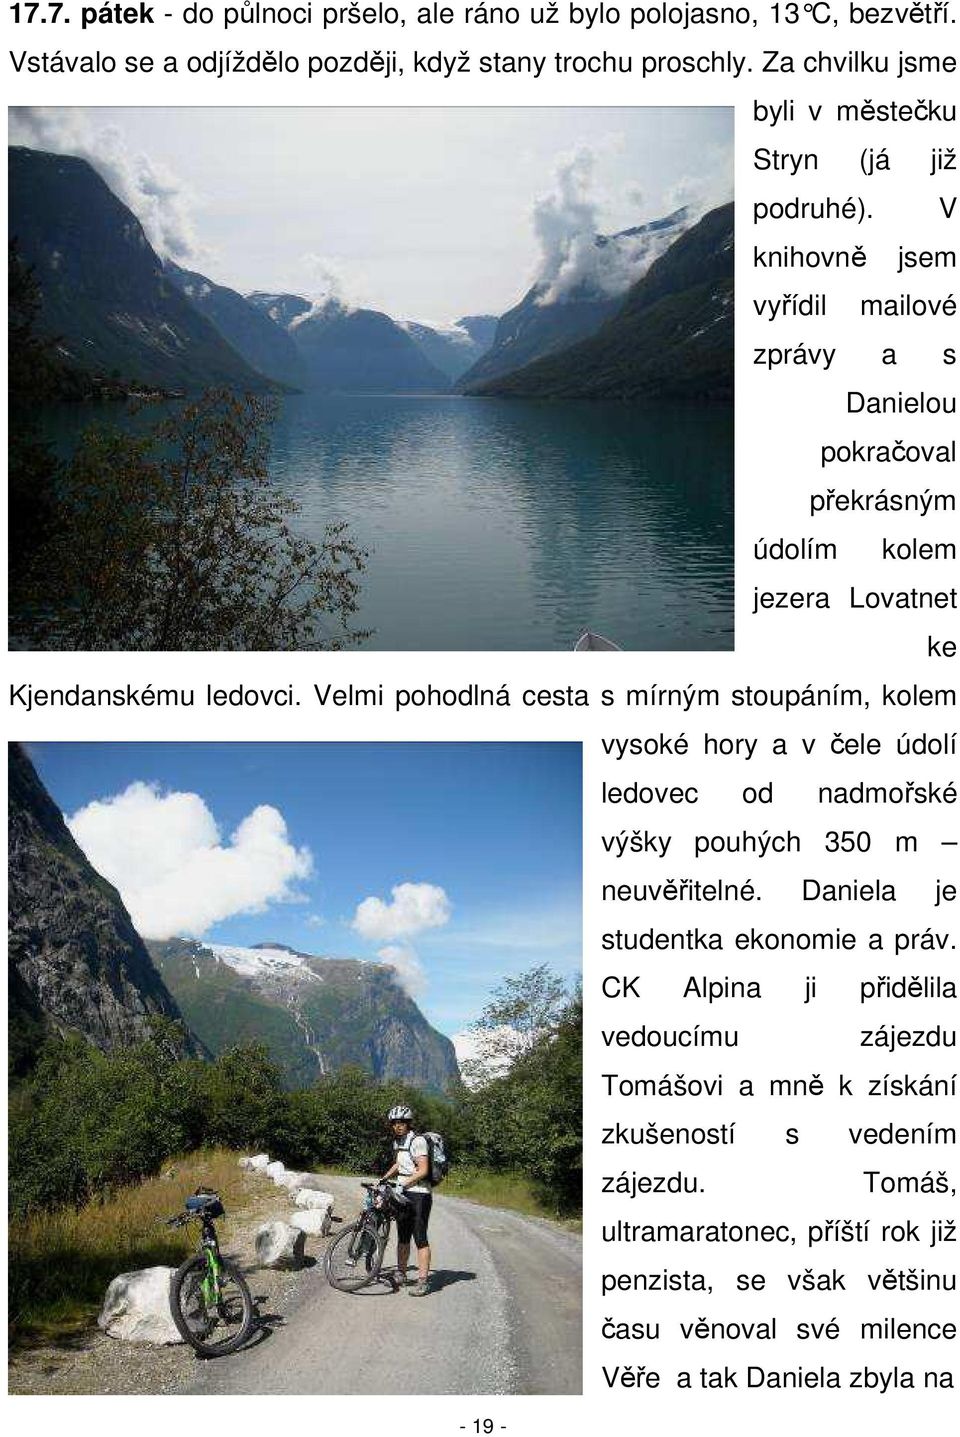 V knihovně jsem vyřídil mailové zprávy a s Danielou pokračoval překrásným údolím kolem jezera Lovatnet ke Kjendanskému ledovci.